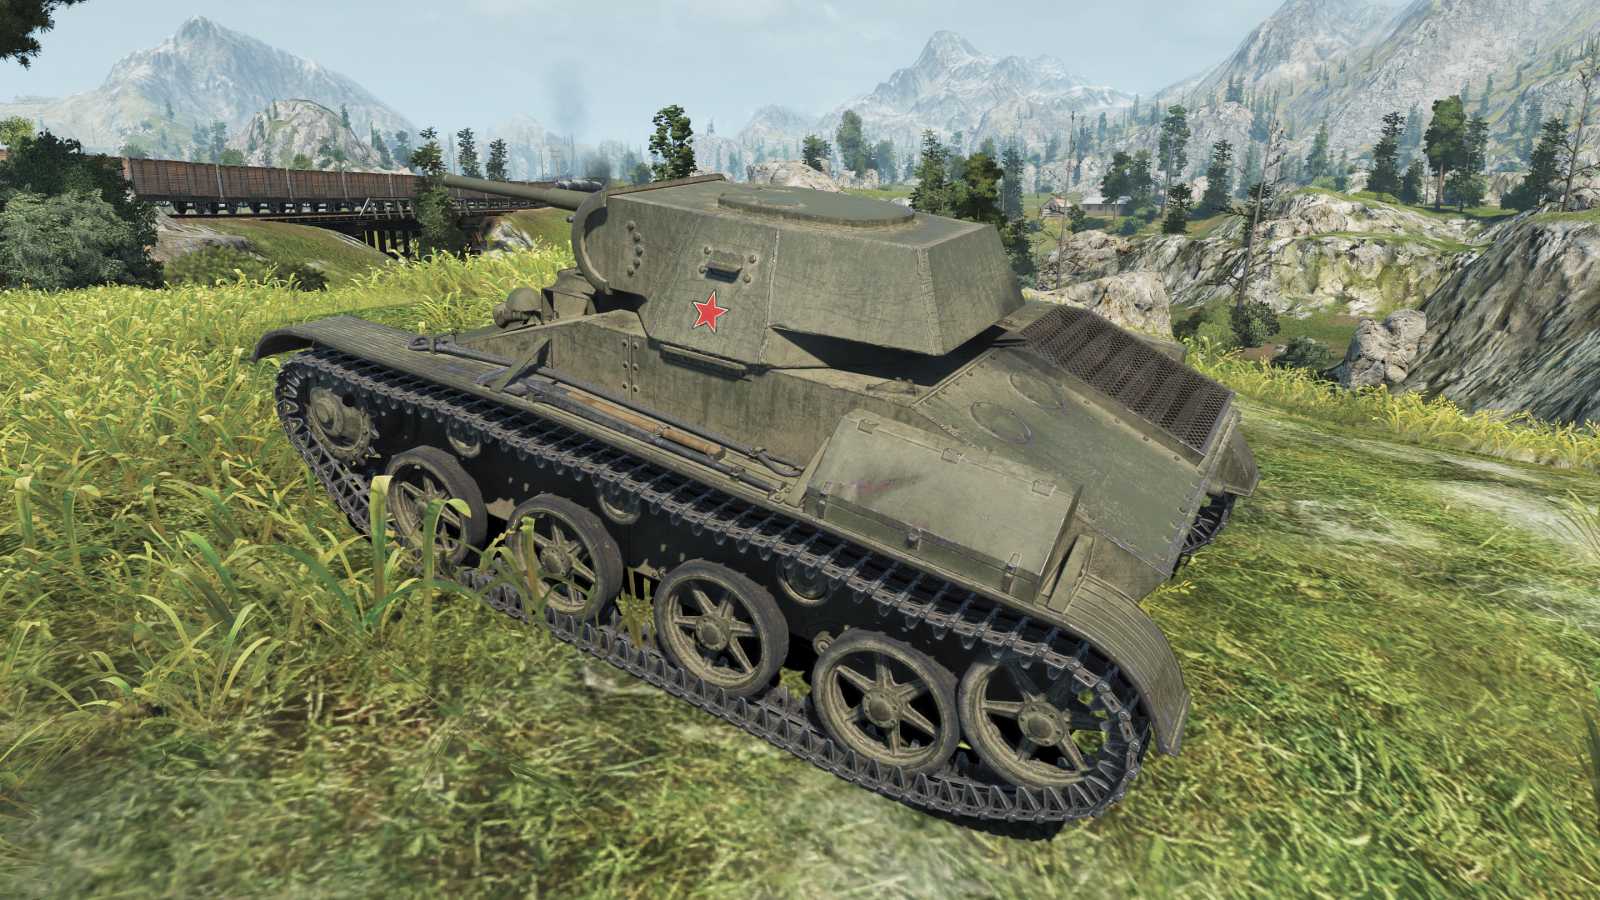 Tank T-45 přichází